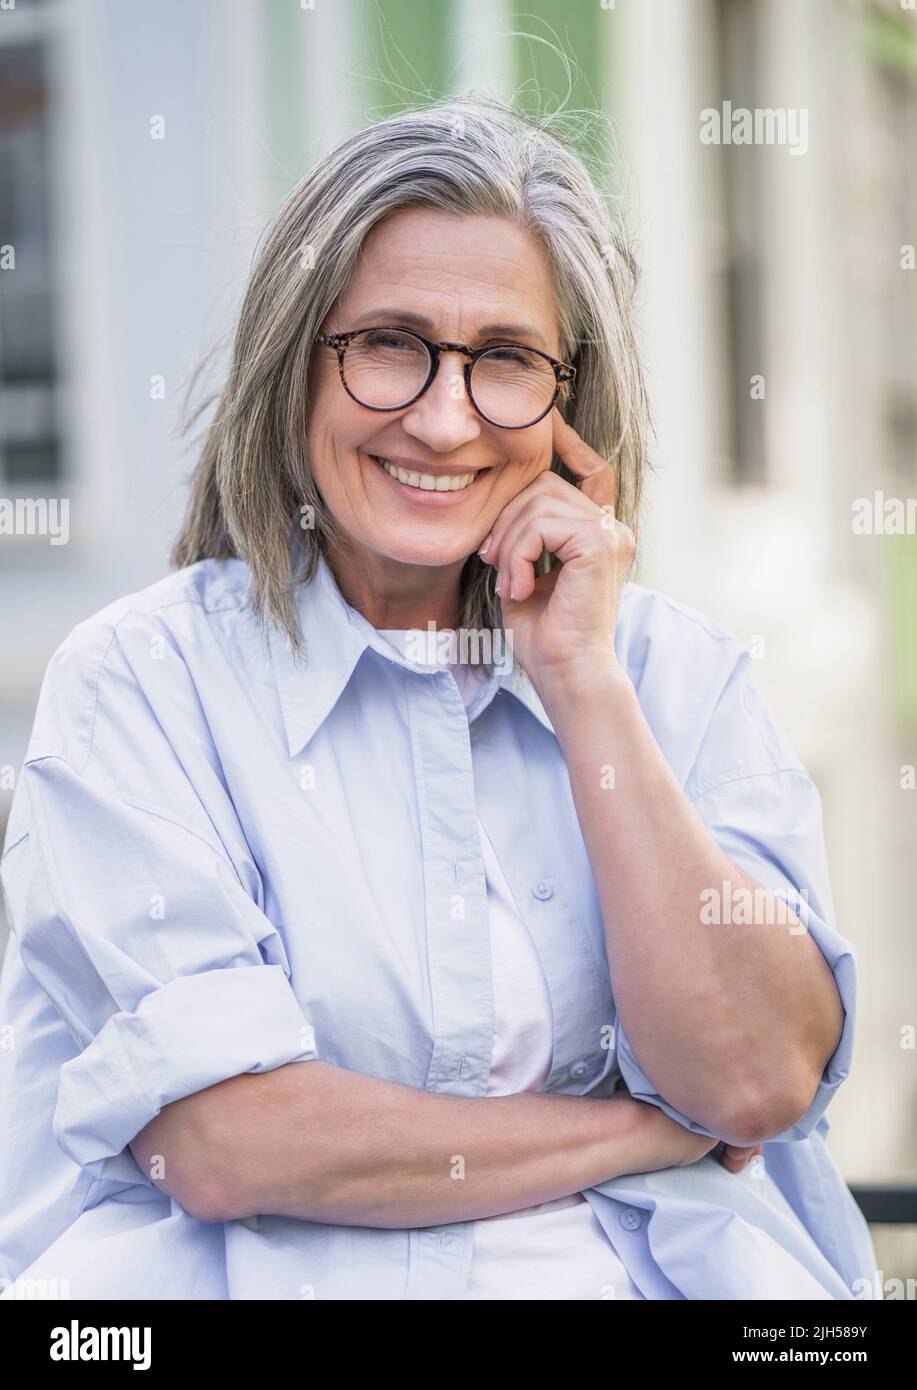 Porträt von schönen reifen grauen Haaren Frau trägt Brille im Freien stehend genießen Freizeit Urlaub rund um die Welt im Ruhestand reisen. Reife Frau mit perfekter Haut trägt blaues Hemd. Stockfoto